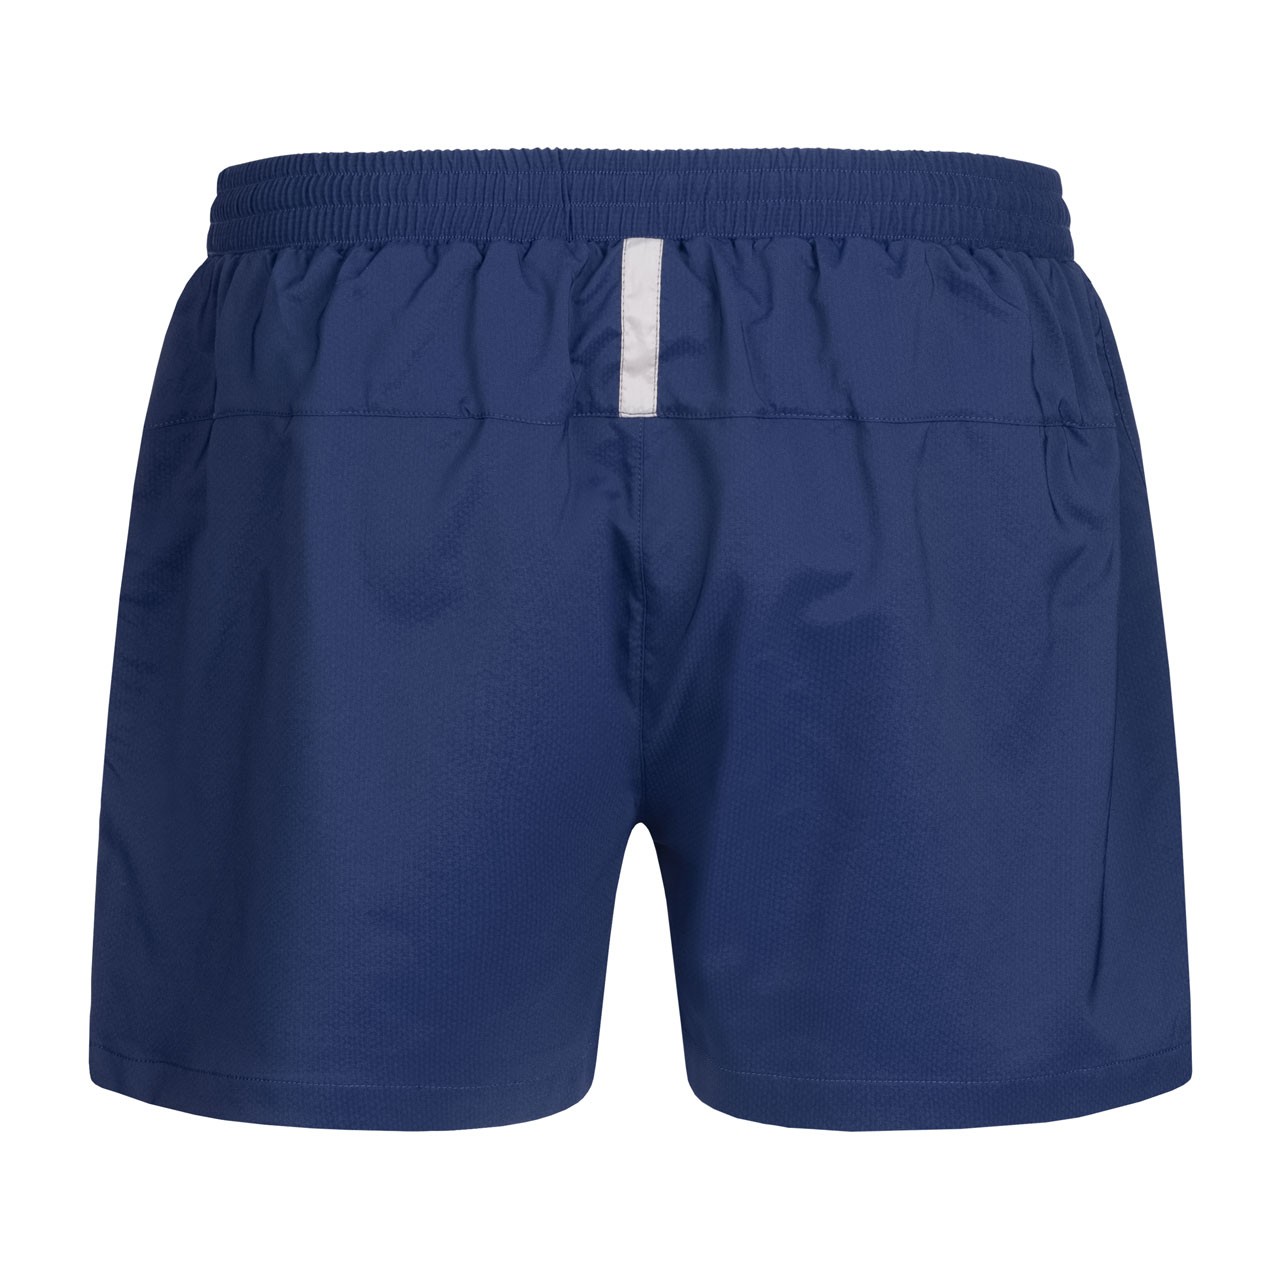 Donic Shorts Sprint navy | Tabletennis11.com (TT11)